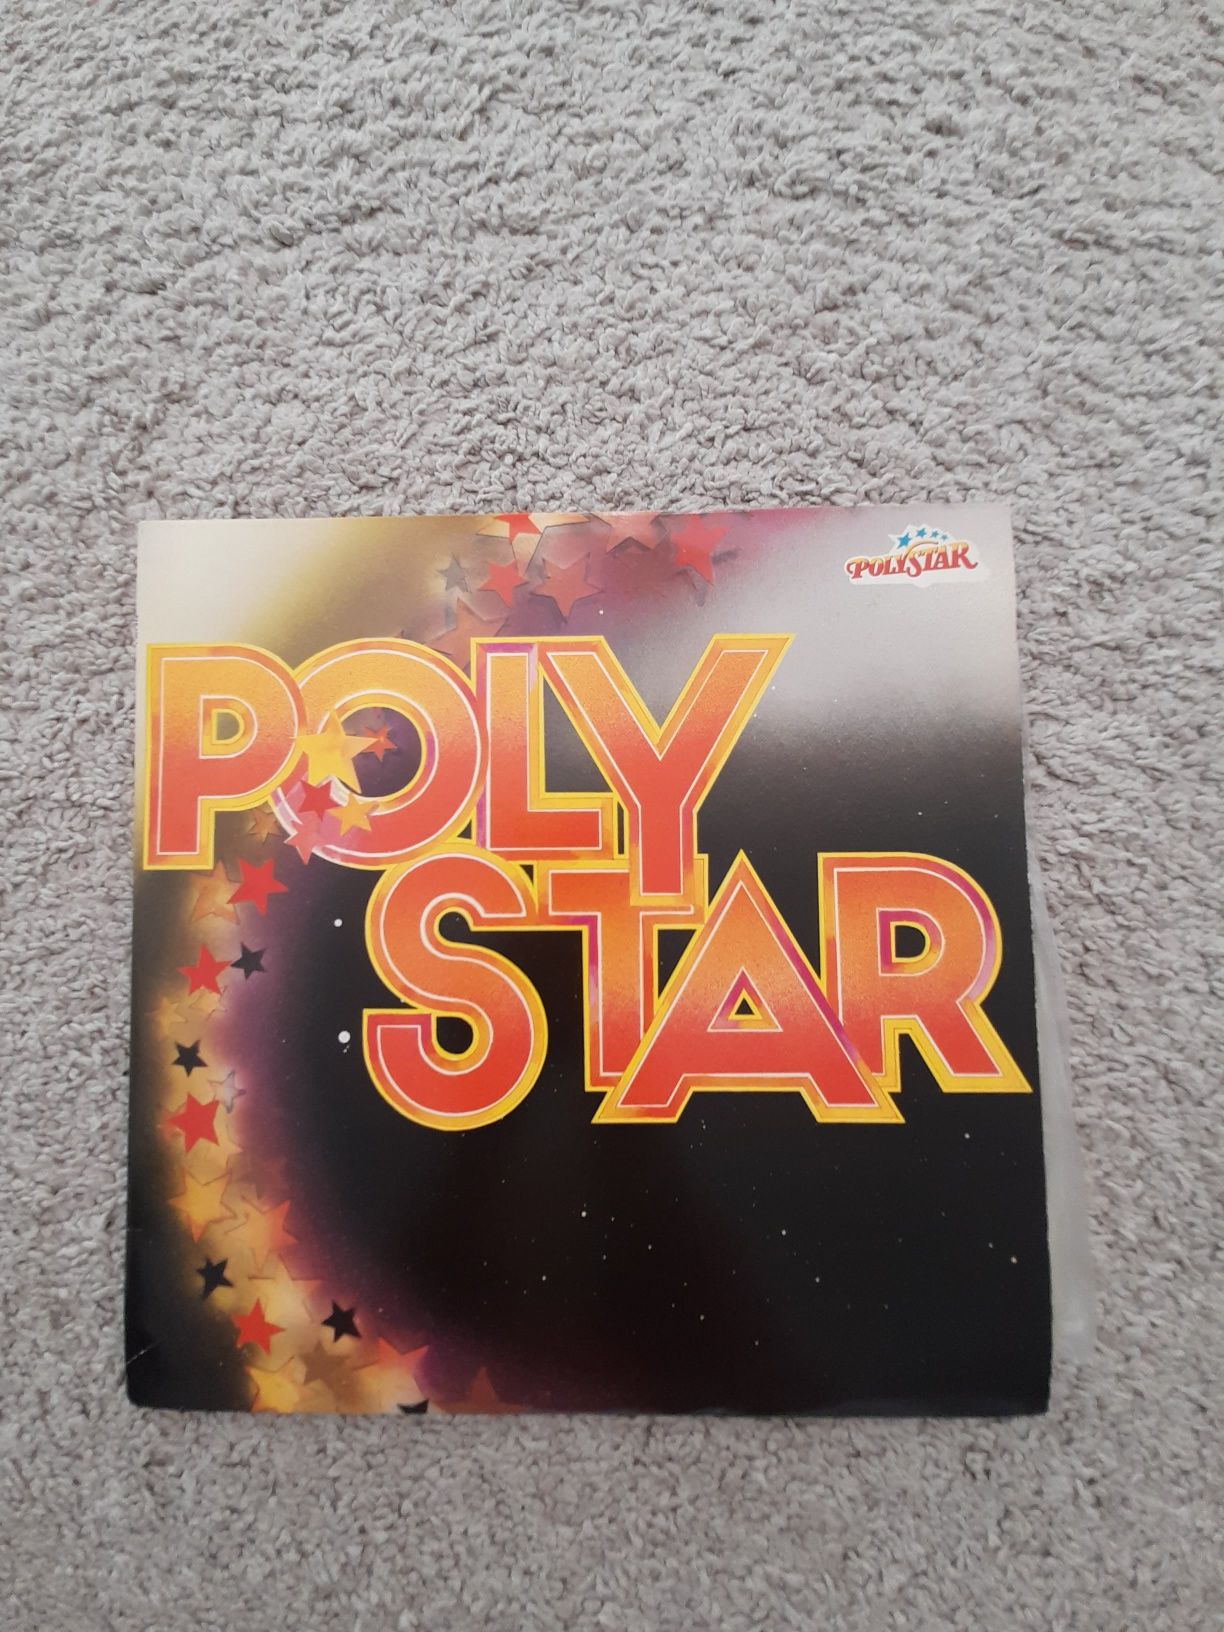 Álbum de vinil duplo com uma colectânea de êxitos Poly Star